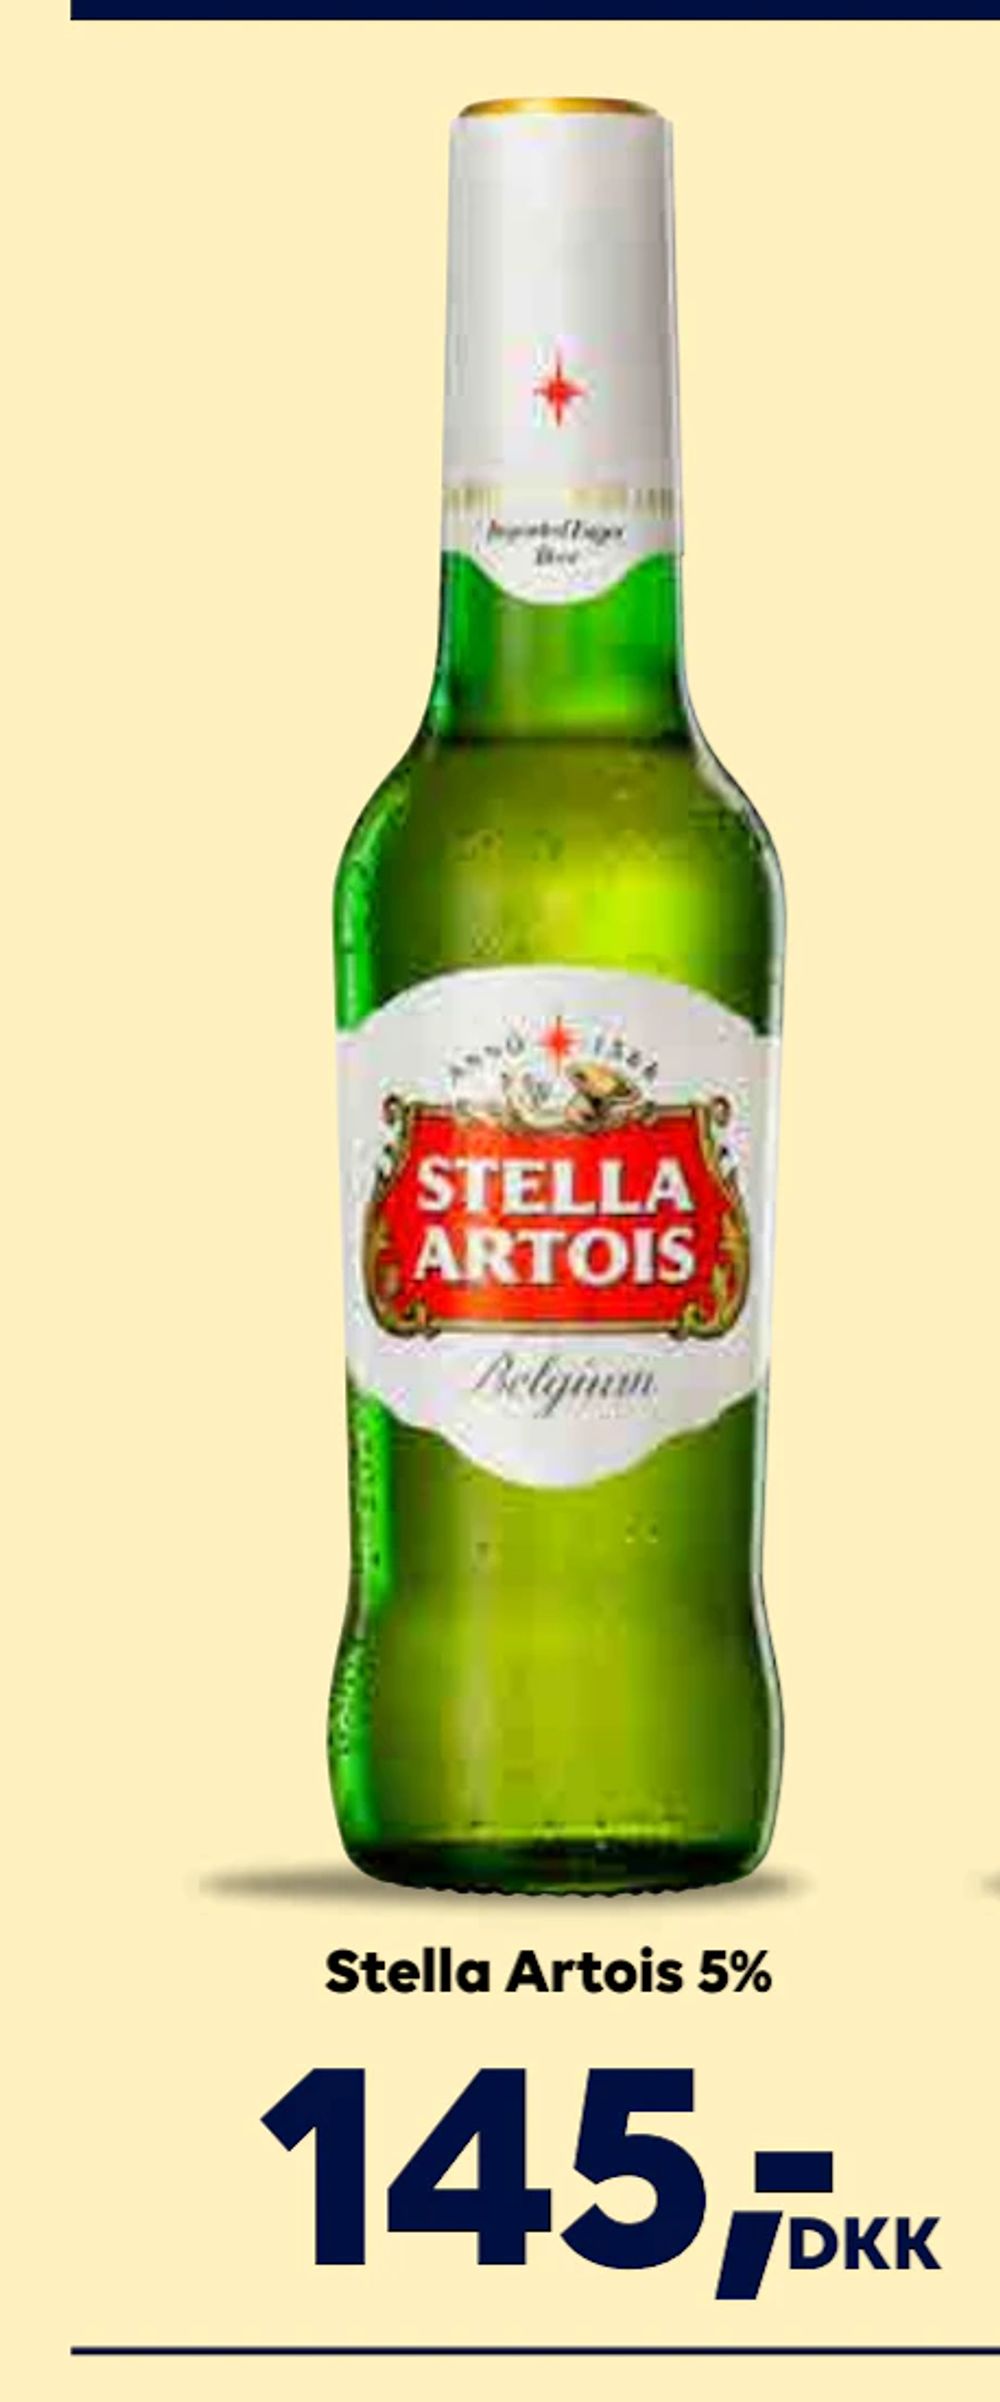 Tilbud på Stella Artois 5% fra BorderShop til 145 kr.